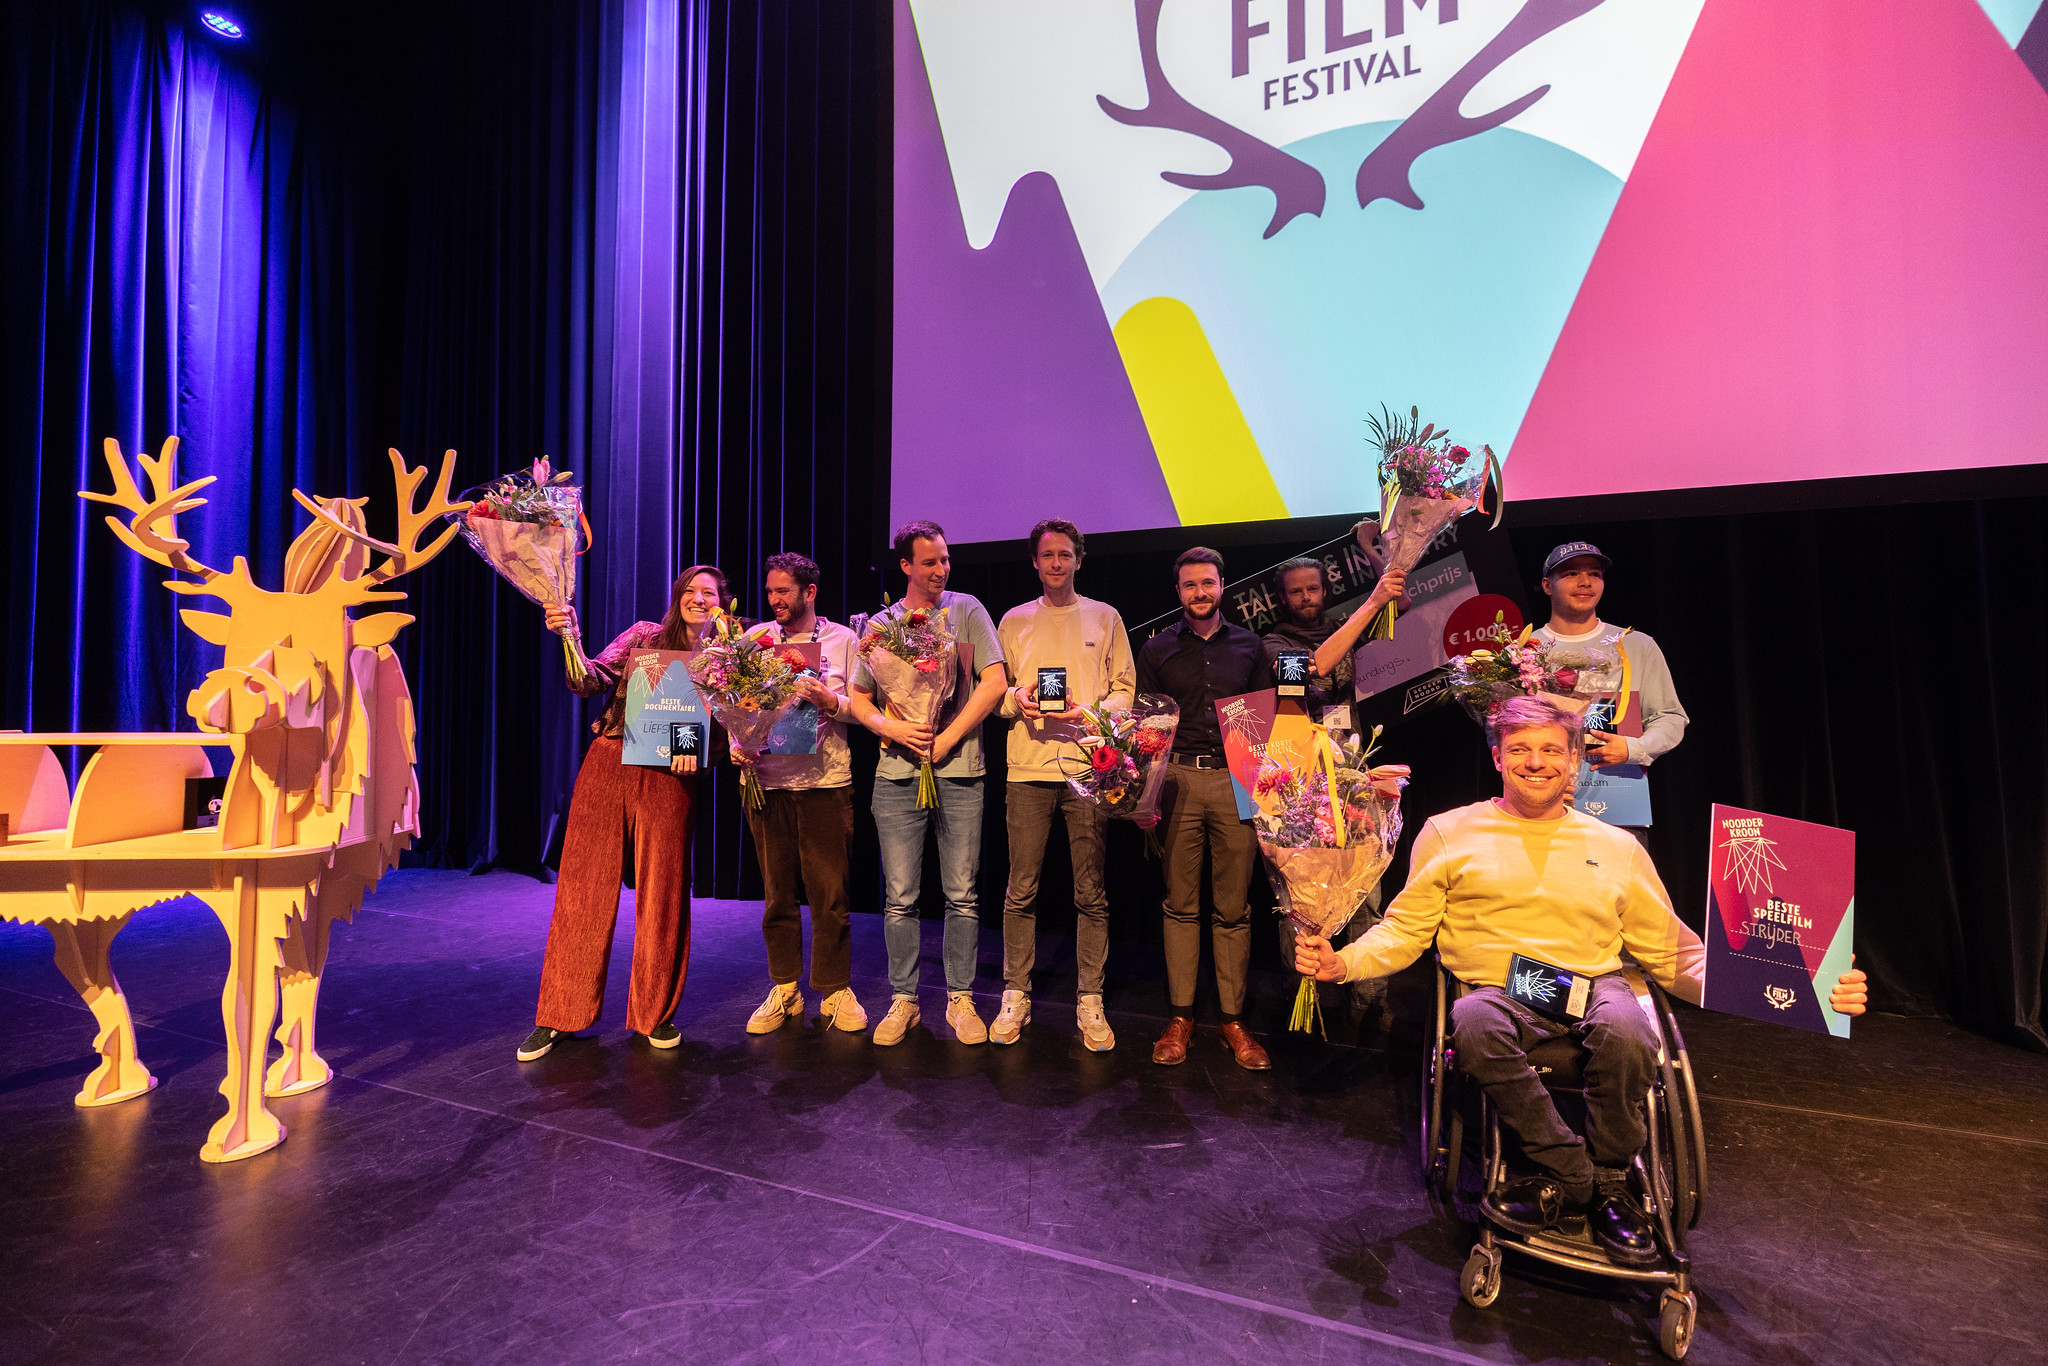 Noordelijk Film Festival Noorderkroon talent jonge makers filmmakers competitie wedstrijd uitreiking podium feestelijk film